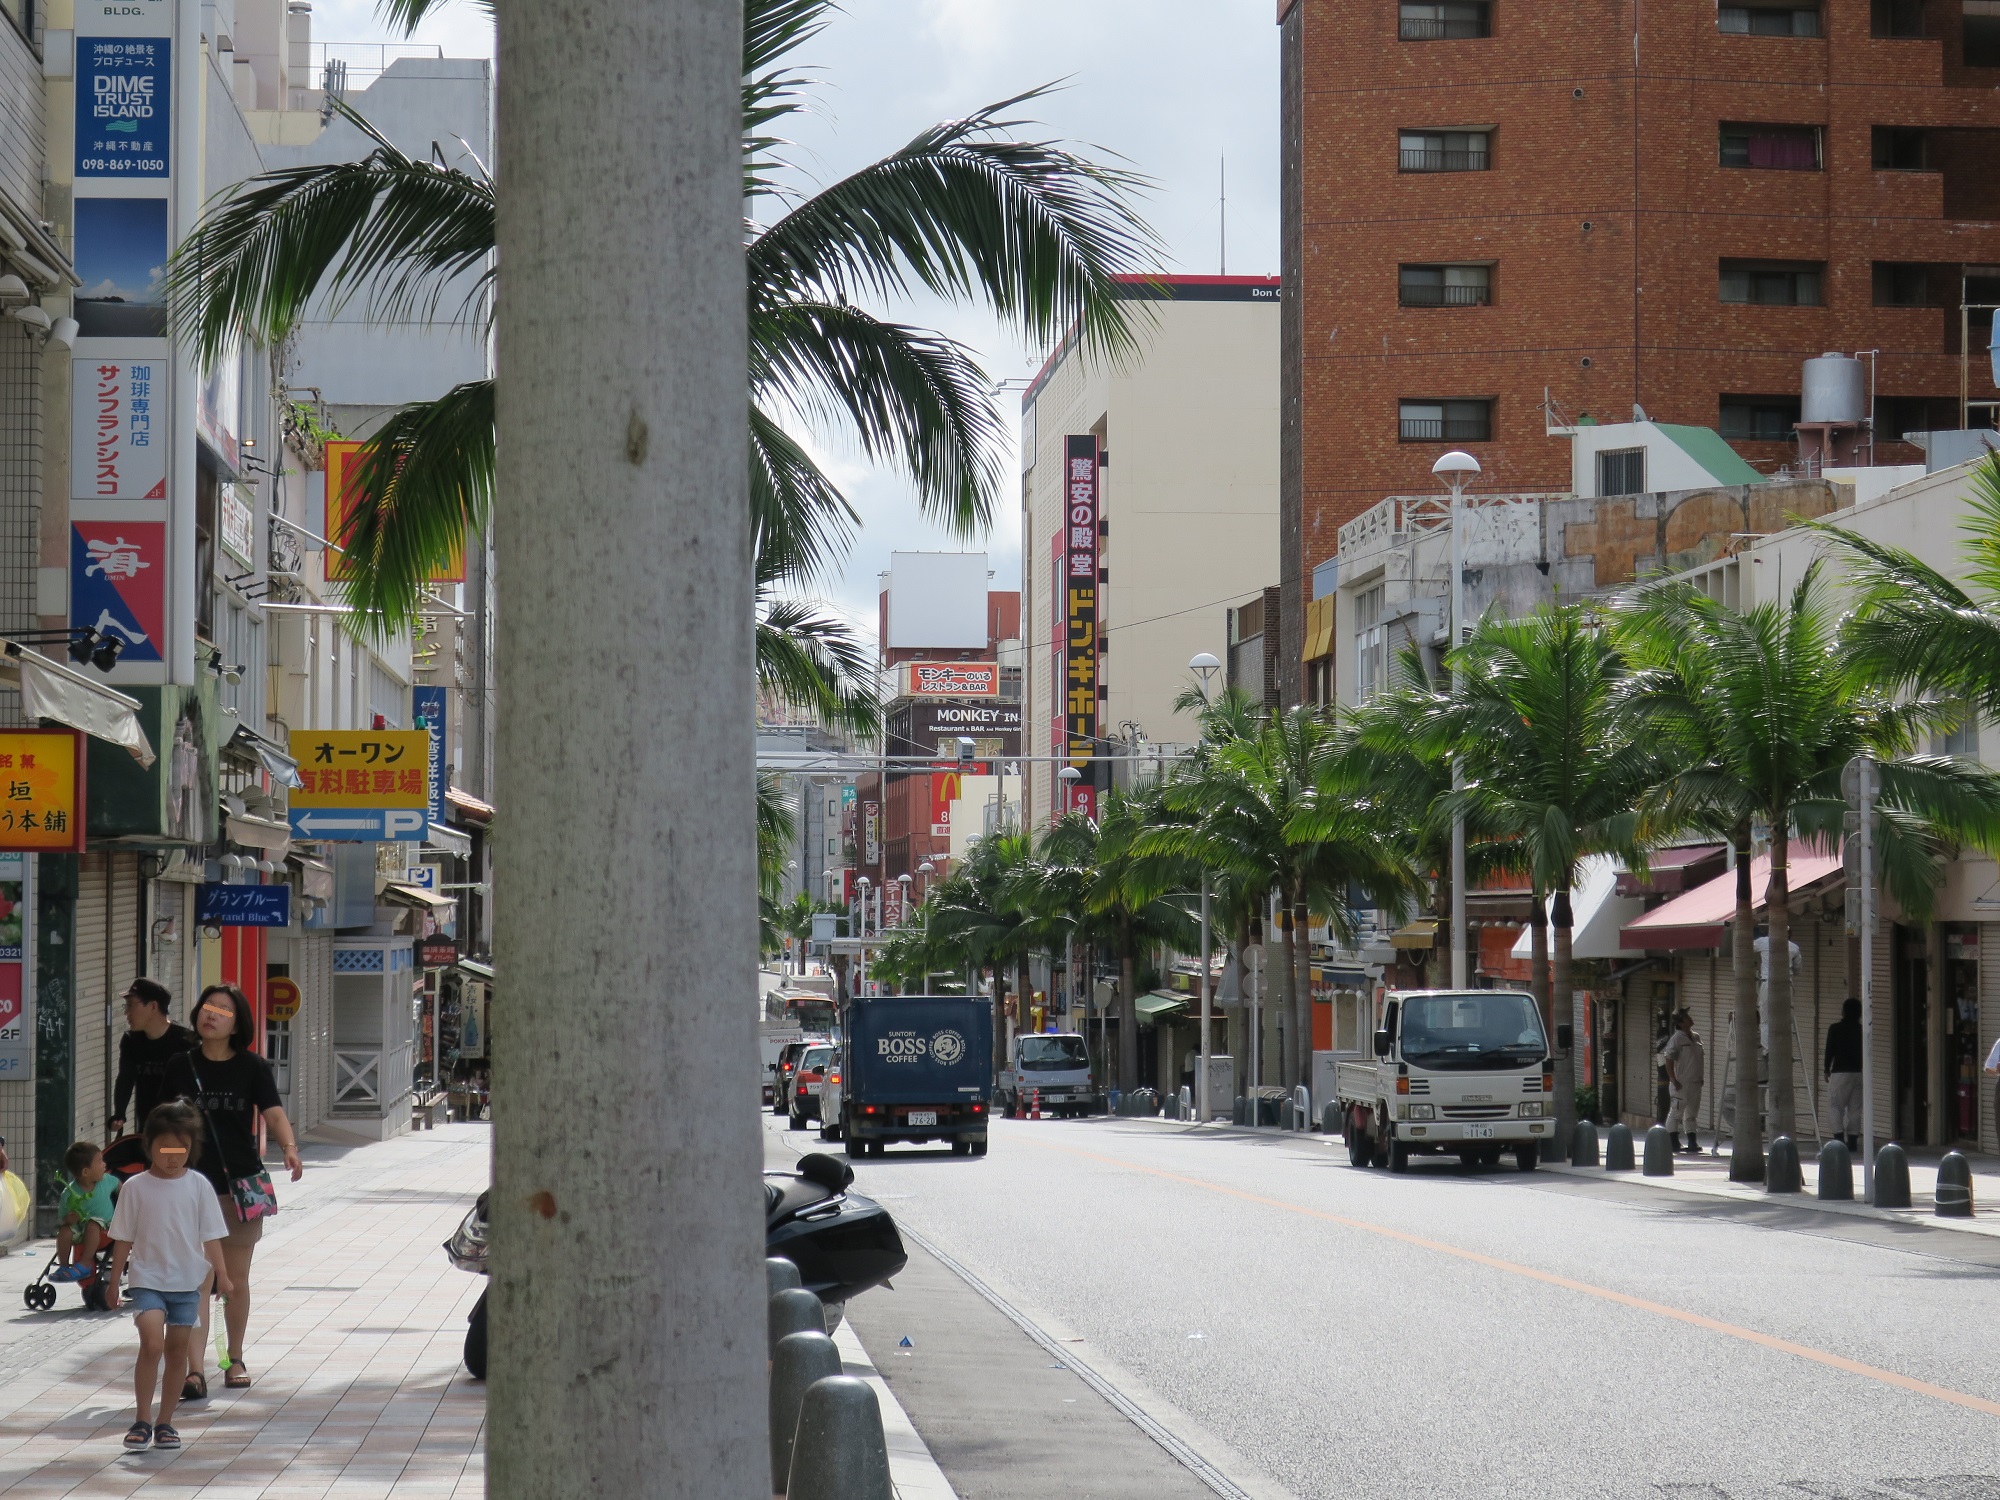 沖縄県 那覇市 国際通り ドン・キホーテの看板が見えます